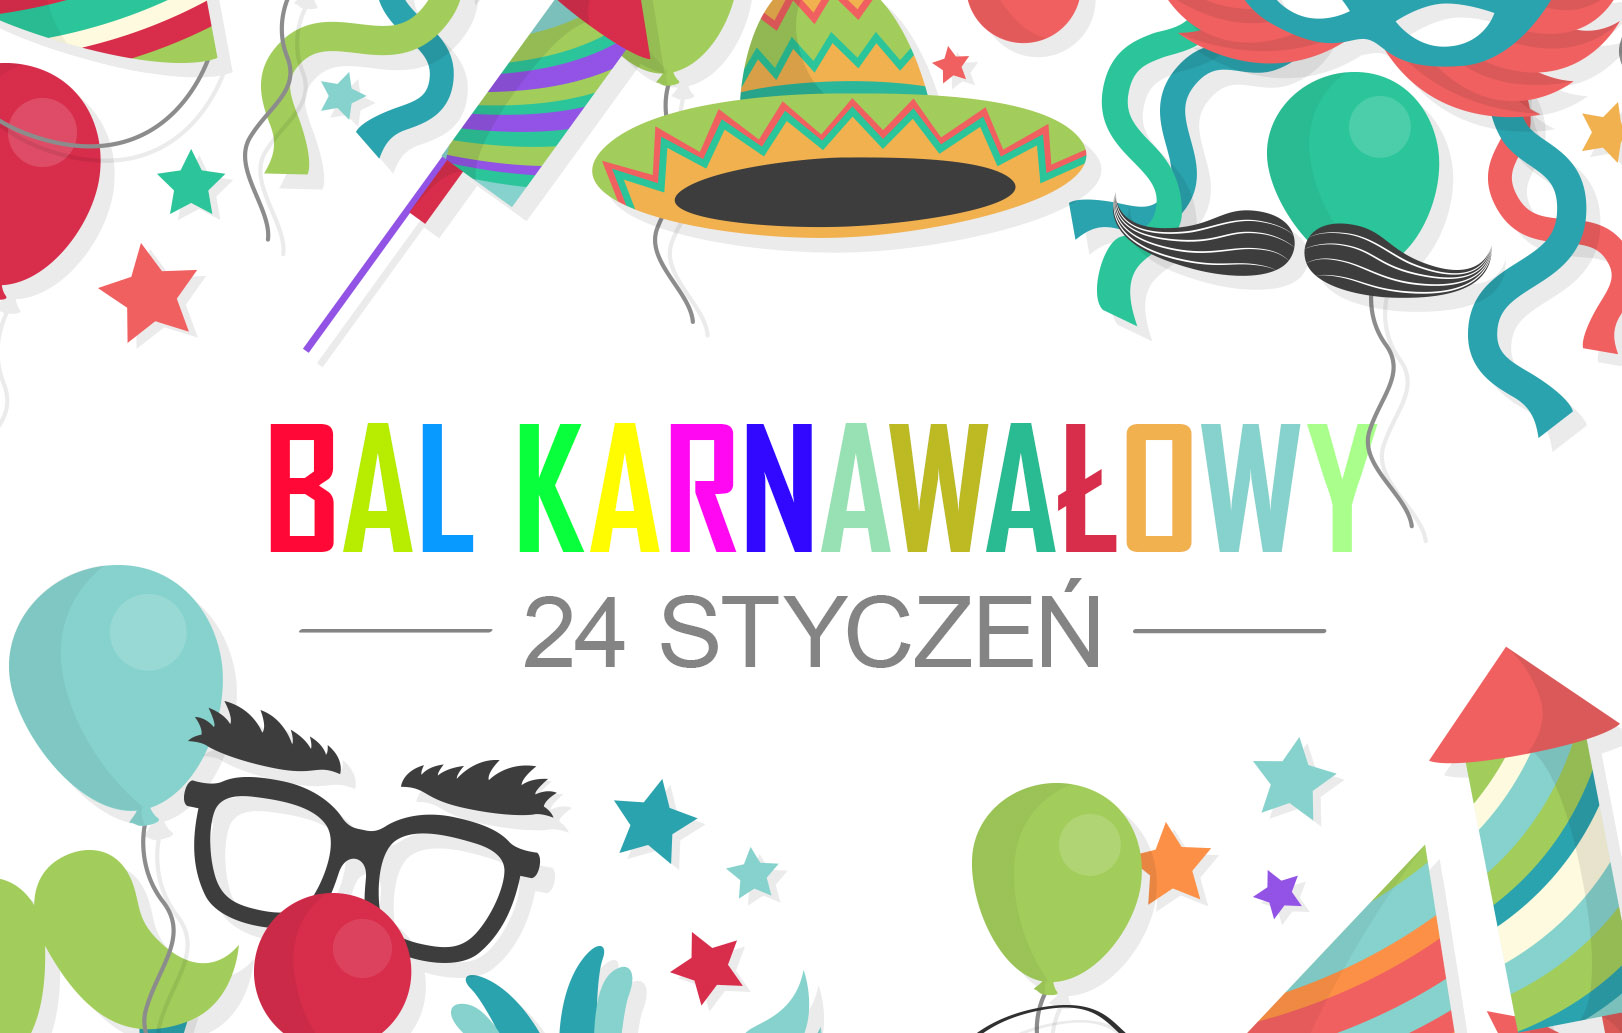 Bal Karnawałowy 2017 w Przedszkolu Samorządowym w Krzeszowicach